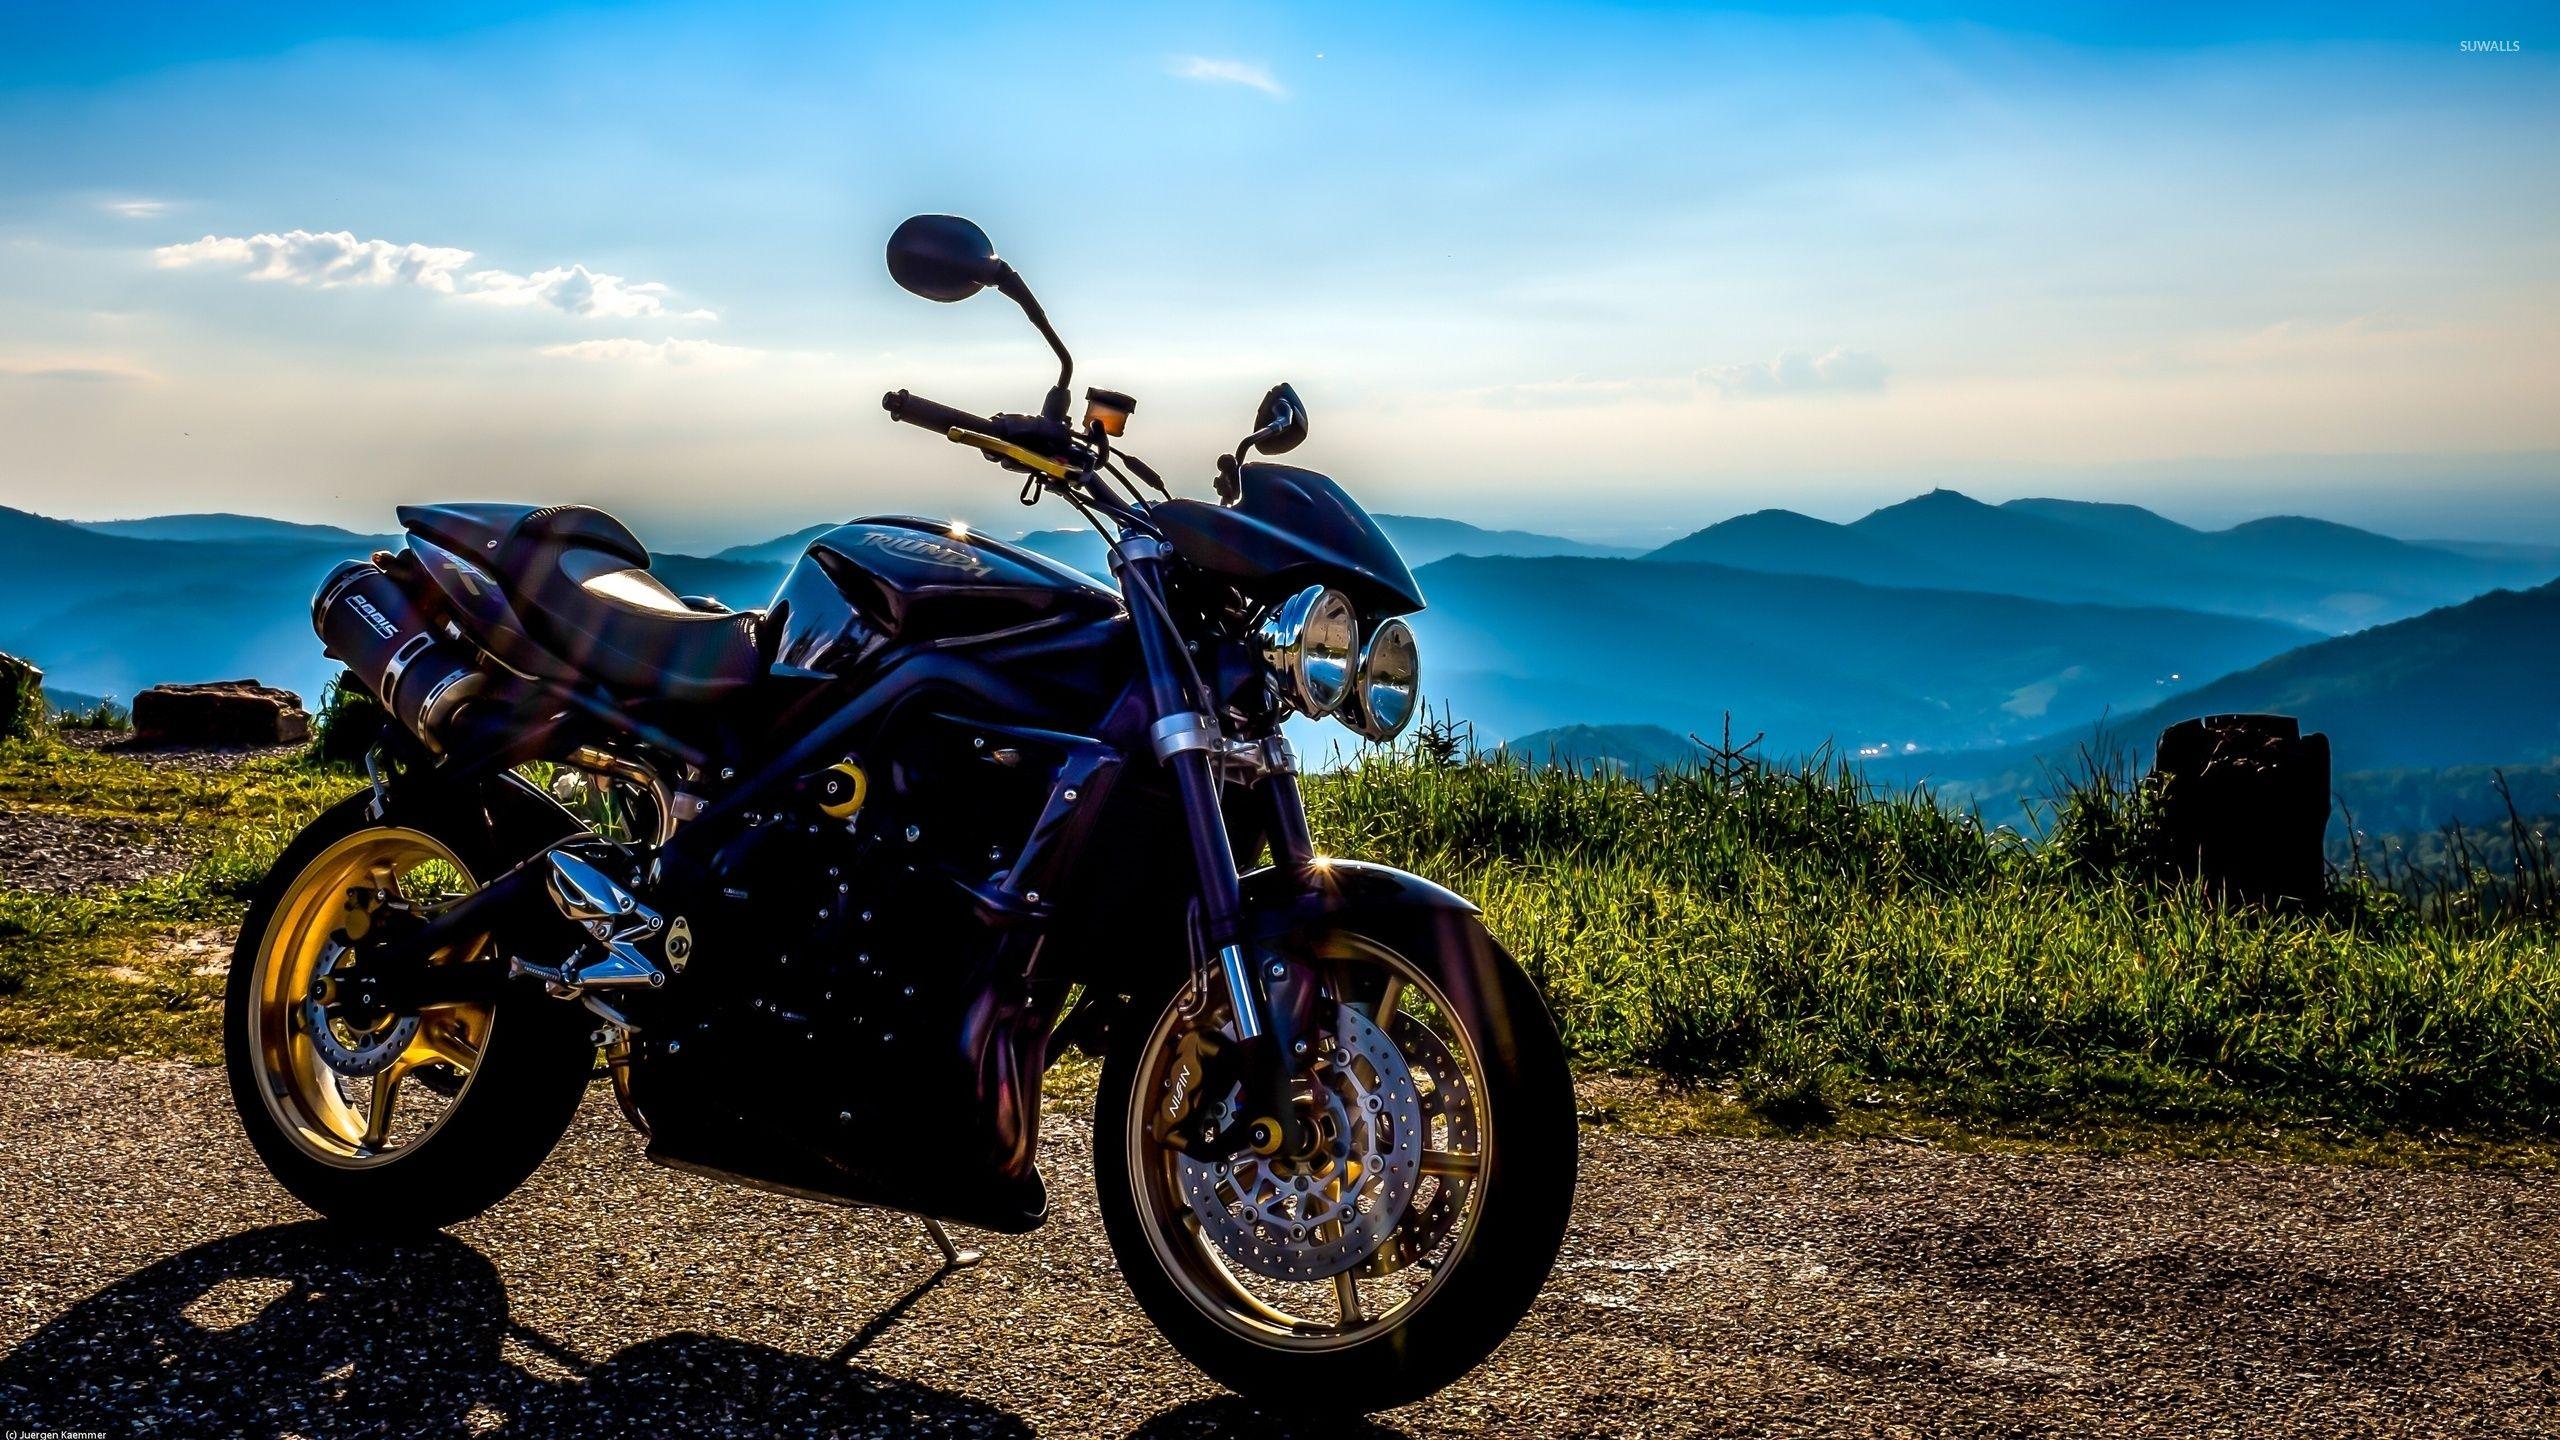 2560x1440 Hình nền Triumph - Hình nền xe máy